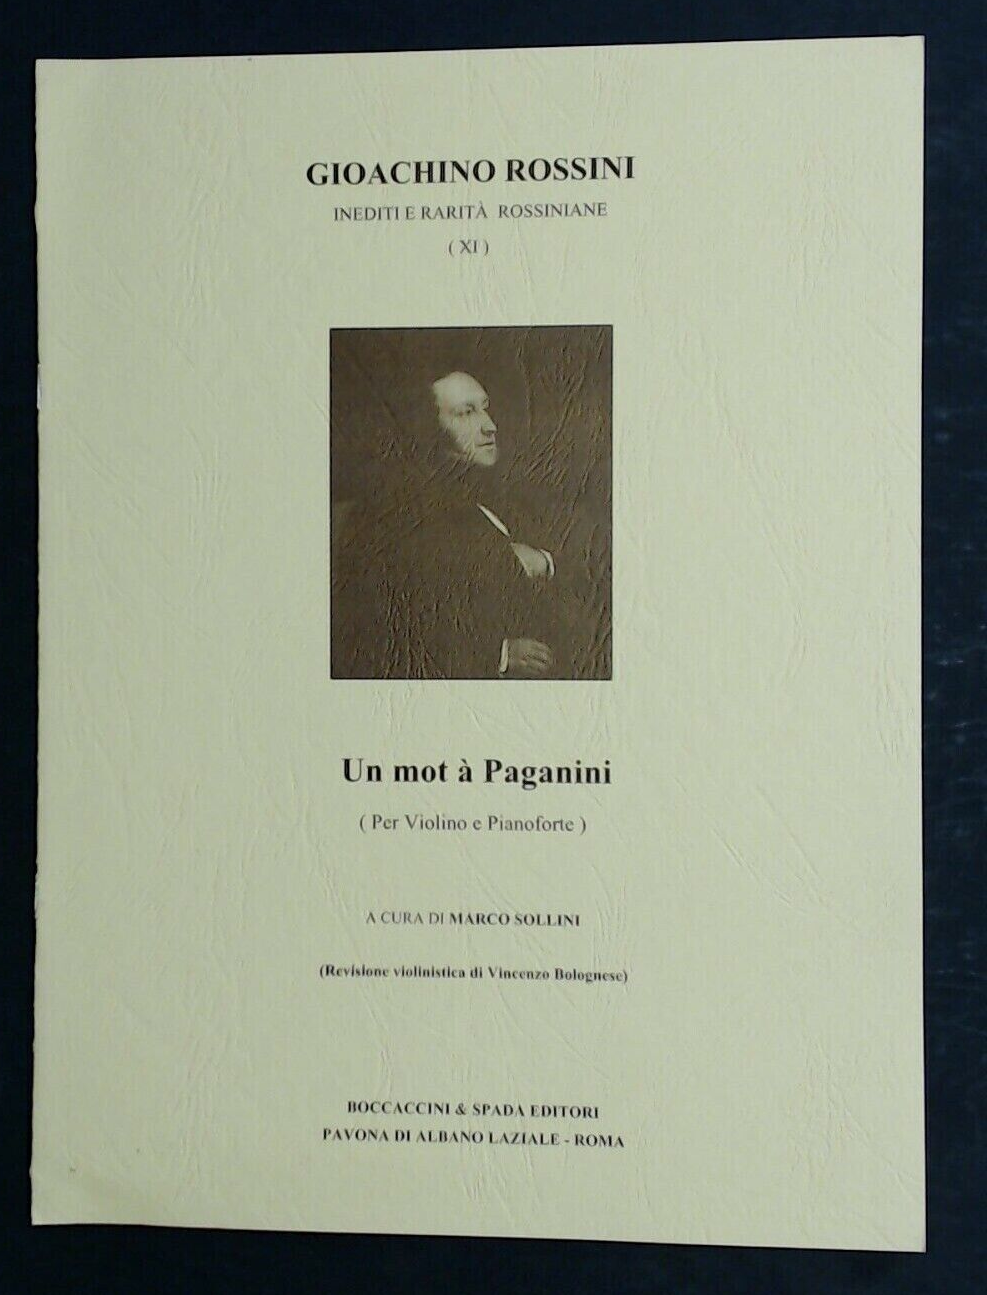 Gioachino Rossini Petite Promenade Scherzo In A Minor - Click Image to Close